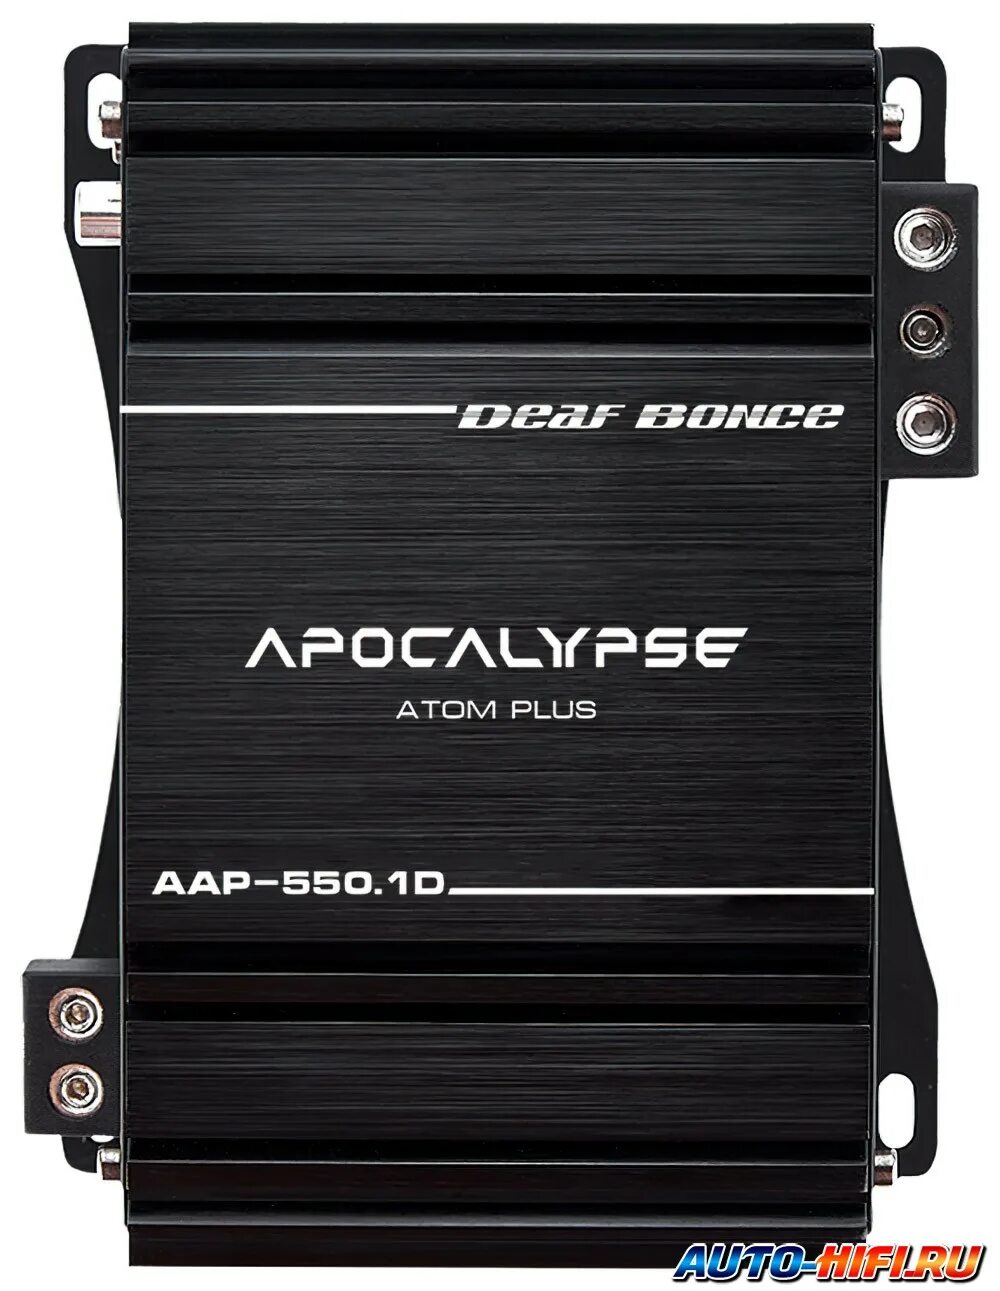 Атом апокалипсис. Apocalypse AAB-500.1D Atom. Apocalypse aap-350.1d Atom Plus. Усилитель Deaf Bonce Apocalypse aap-350.1d Atom Plus. Усилитель апокалипсис AAB-500.